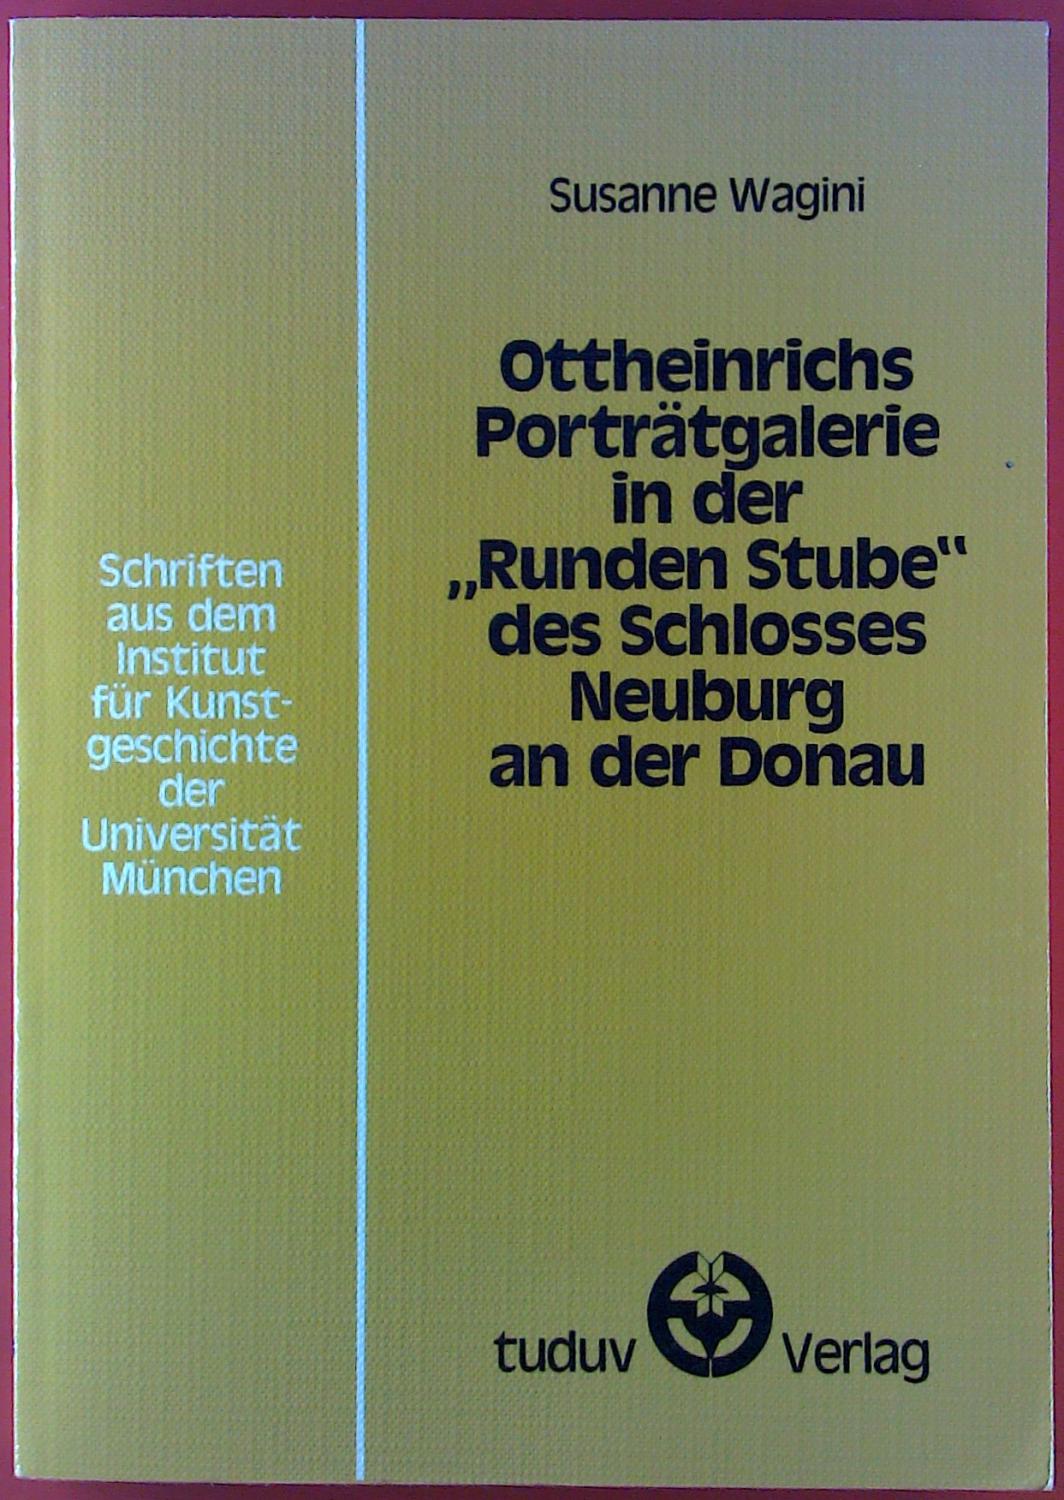 Ottoheinrich Portätgalerie in der - Susanne Wagini